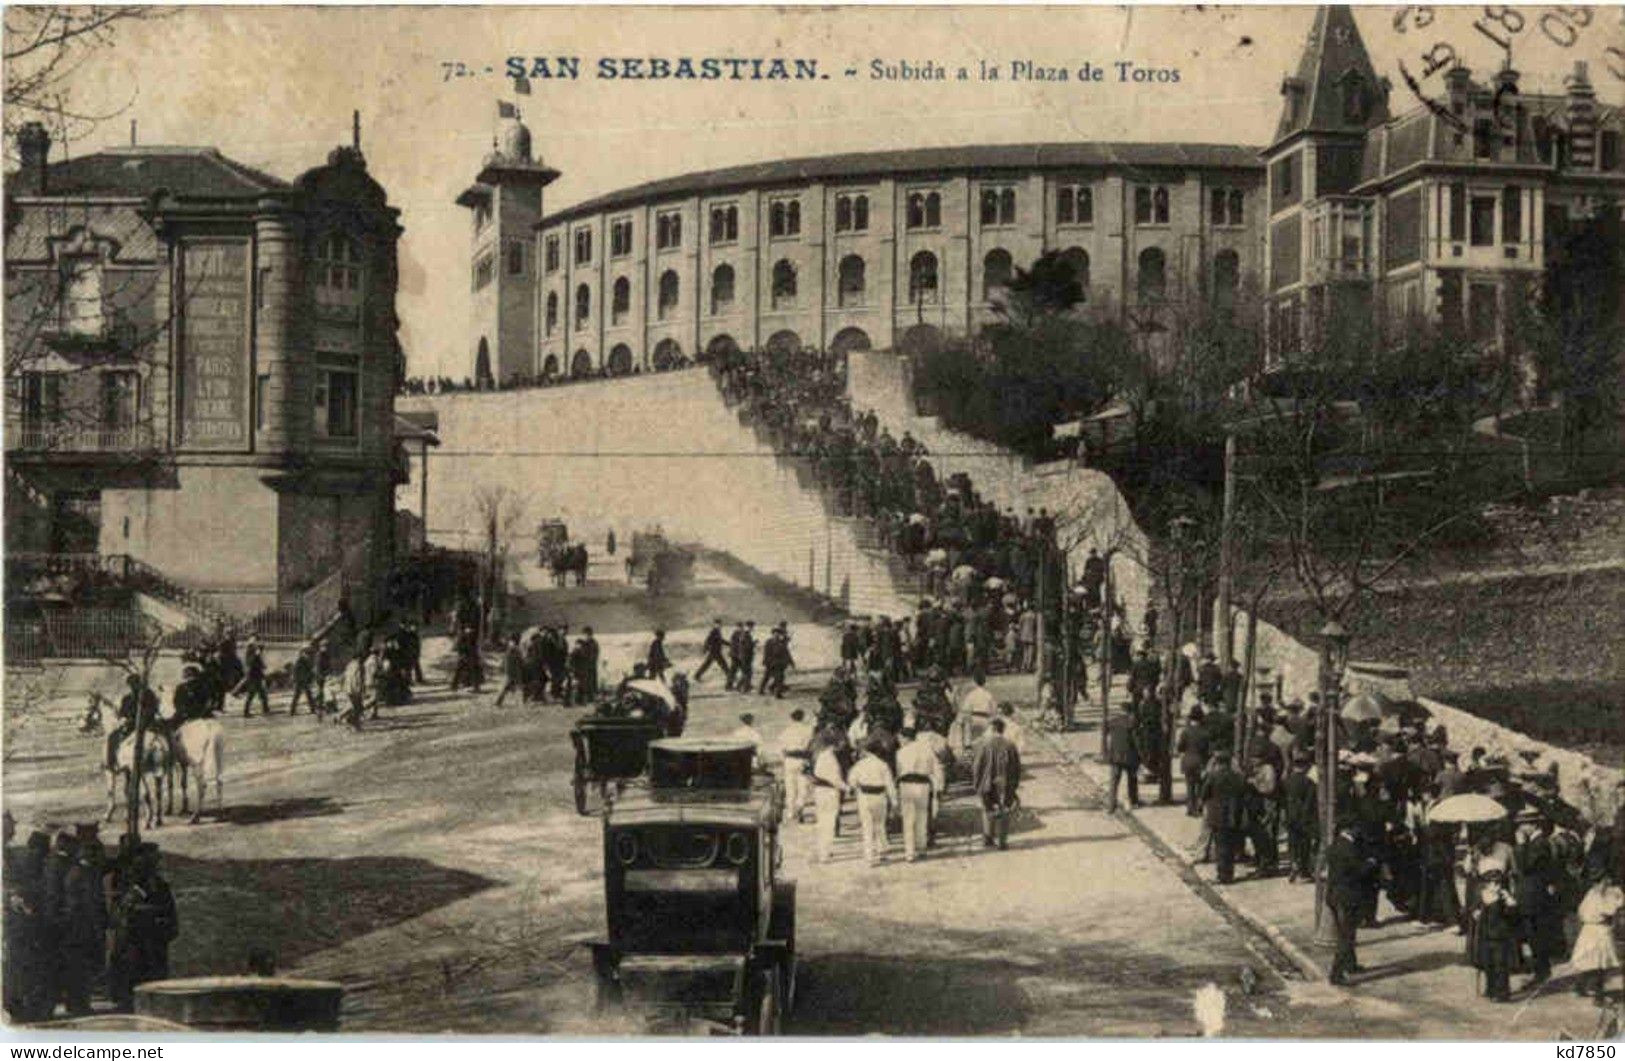 San Sebastian - Guipúzcoa (San Sebastián)